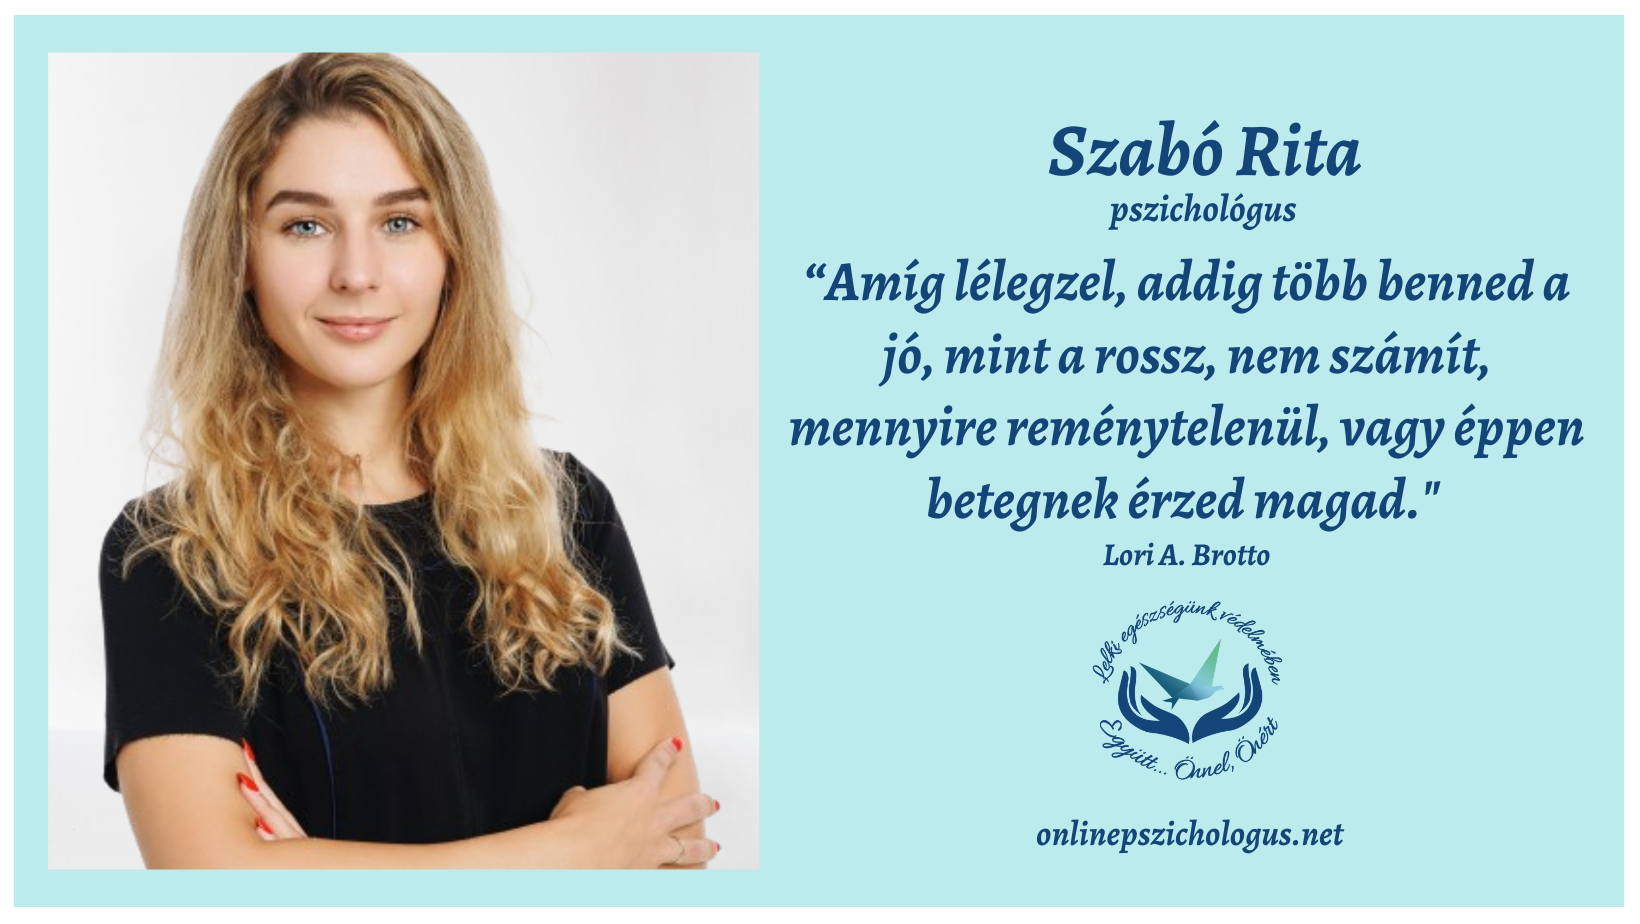 Interjú Szabó Rita pszichológussal